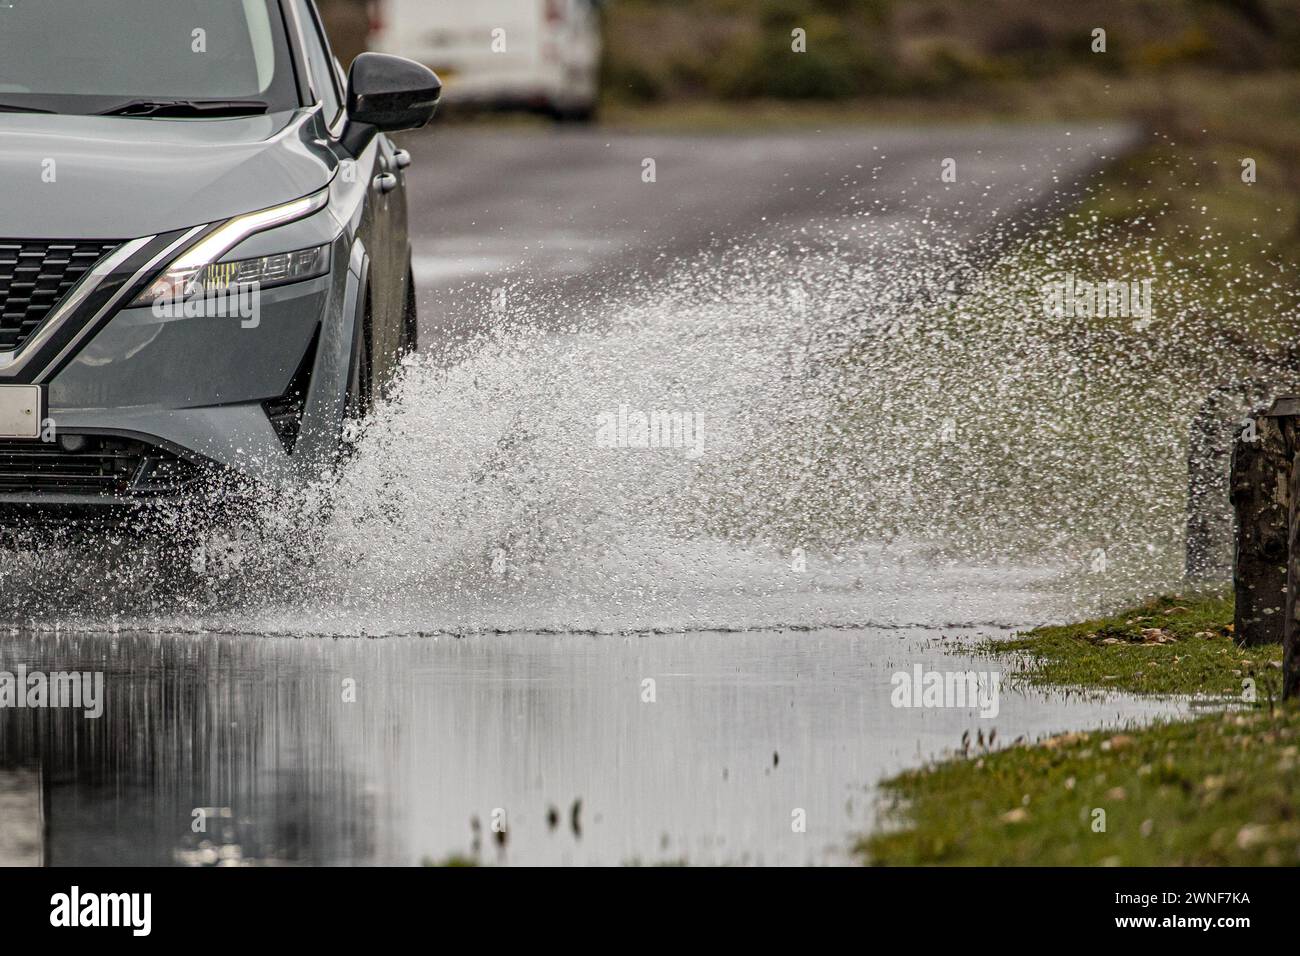 Rocío de agua de una rueda de automóvil y la sección delantera del automóvil mientras conduce a través de una carretera inundada Foto de stock